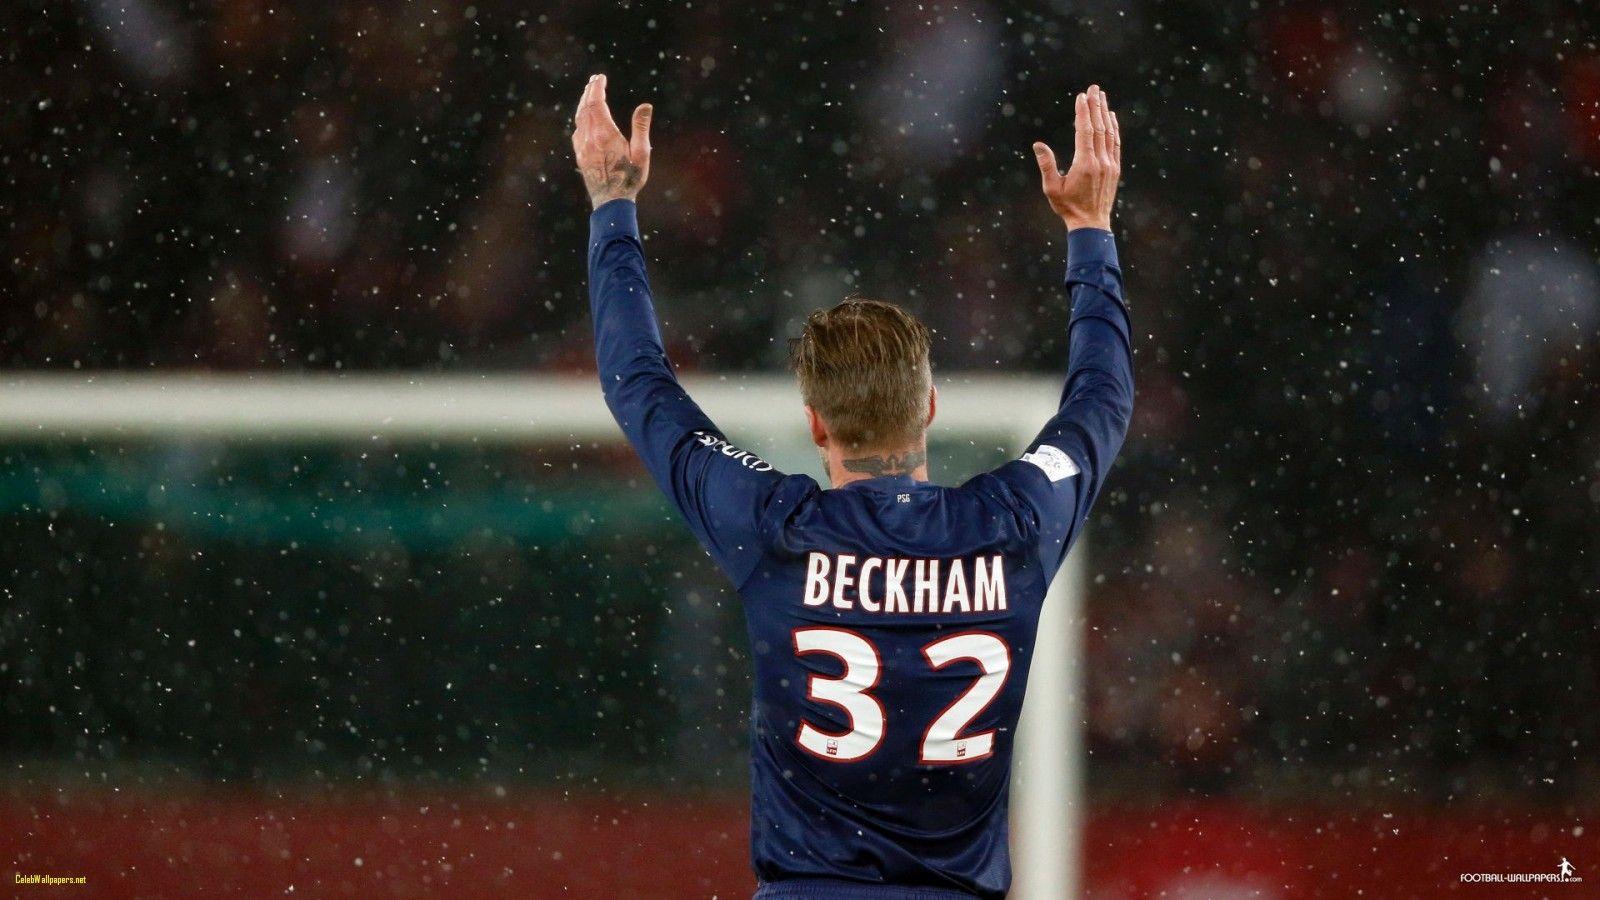 Cool David Beckham Blue Paris Saint Germain Home Jersey After Match Uefa  Champion League Wallpaper Hd Football Sports Images Barcelona Vs Psg  Wallpaper  照片图像